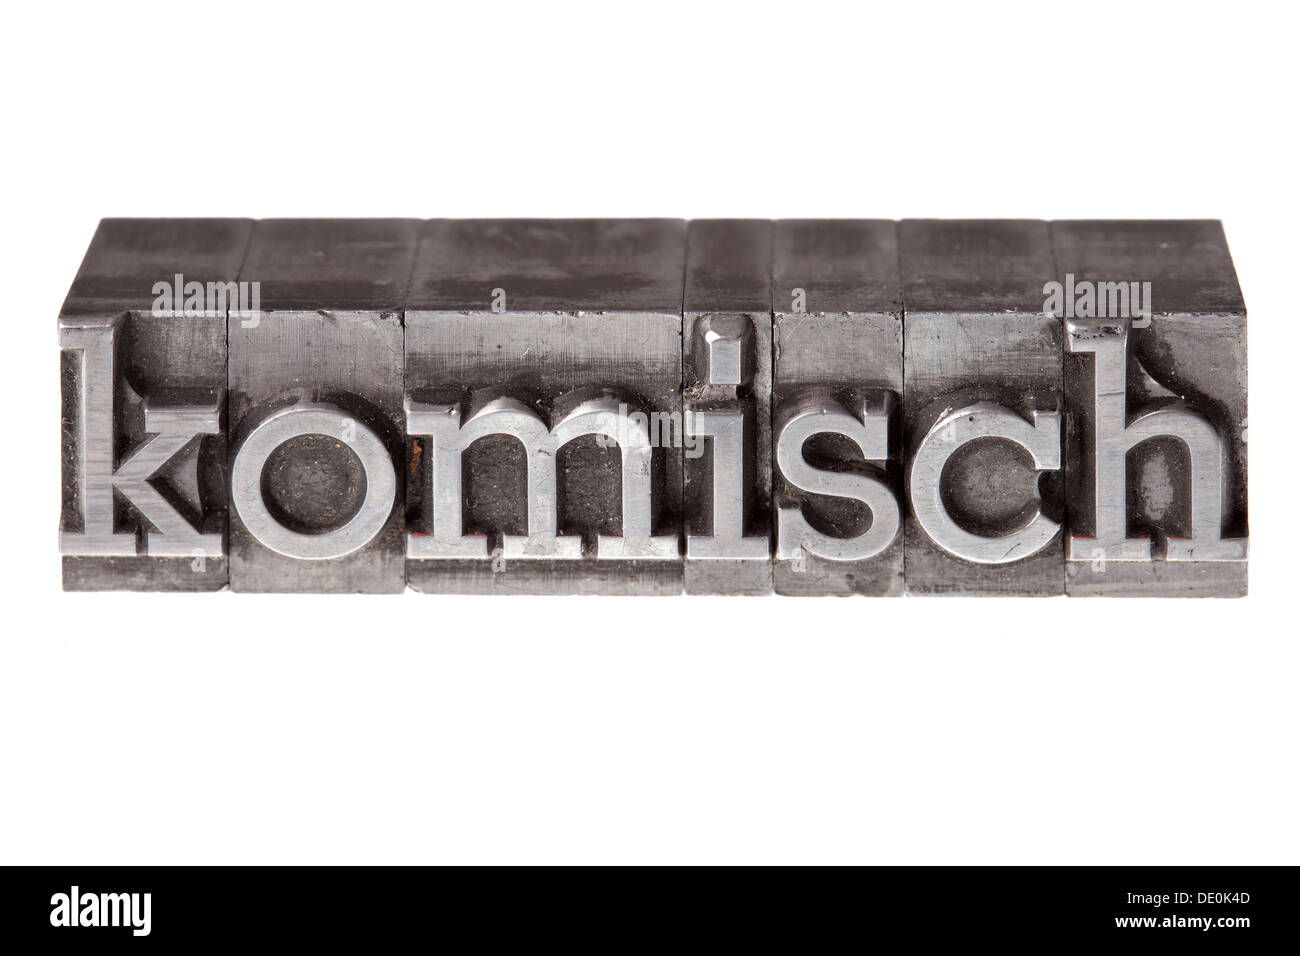 Antiguas letras de plomo que forman la palabra "komisch', Alemán para extraño o extraño Foto de stock